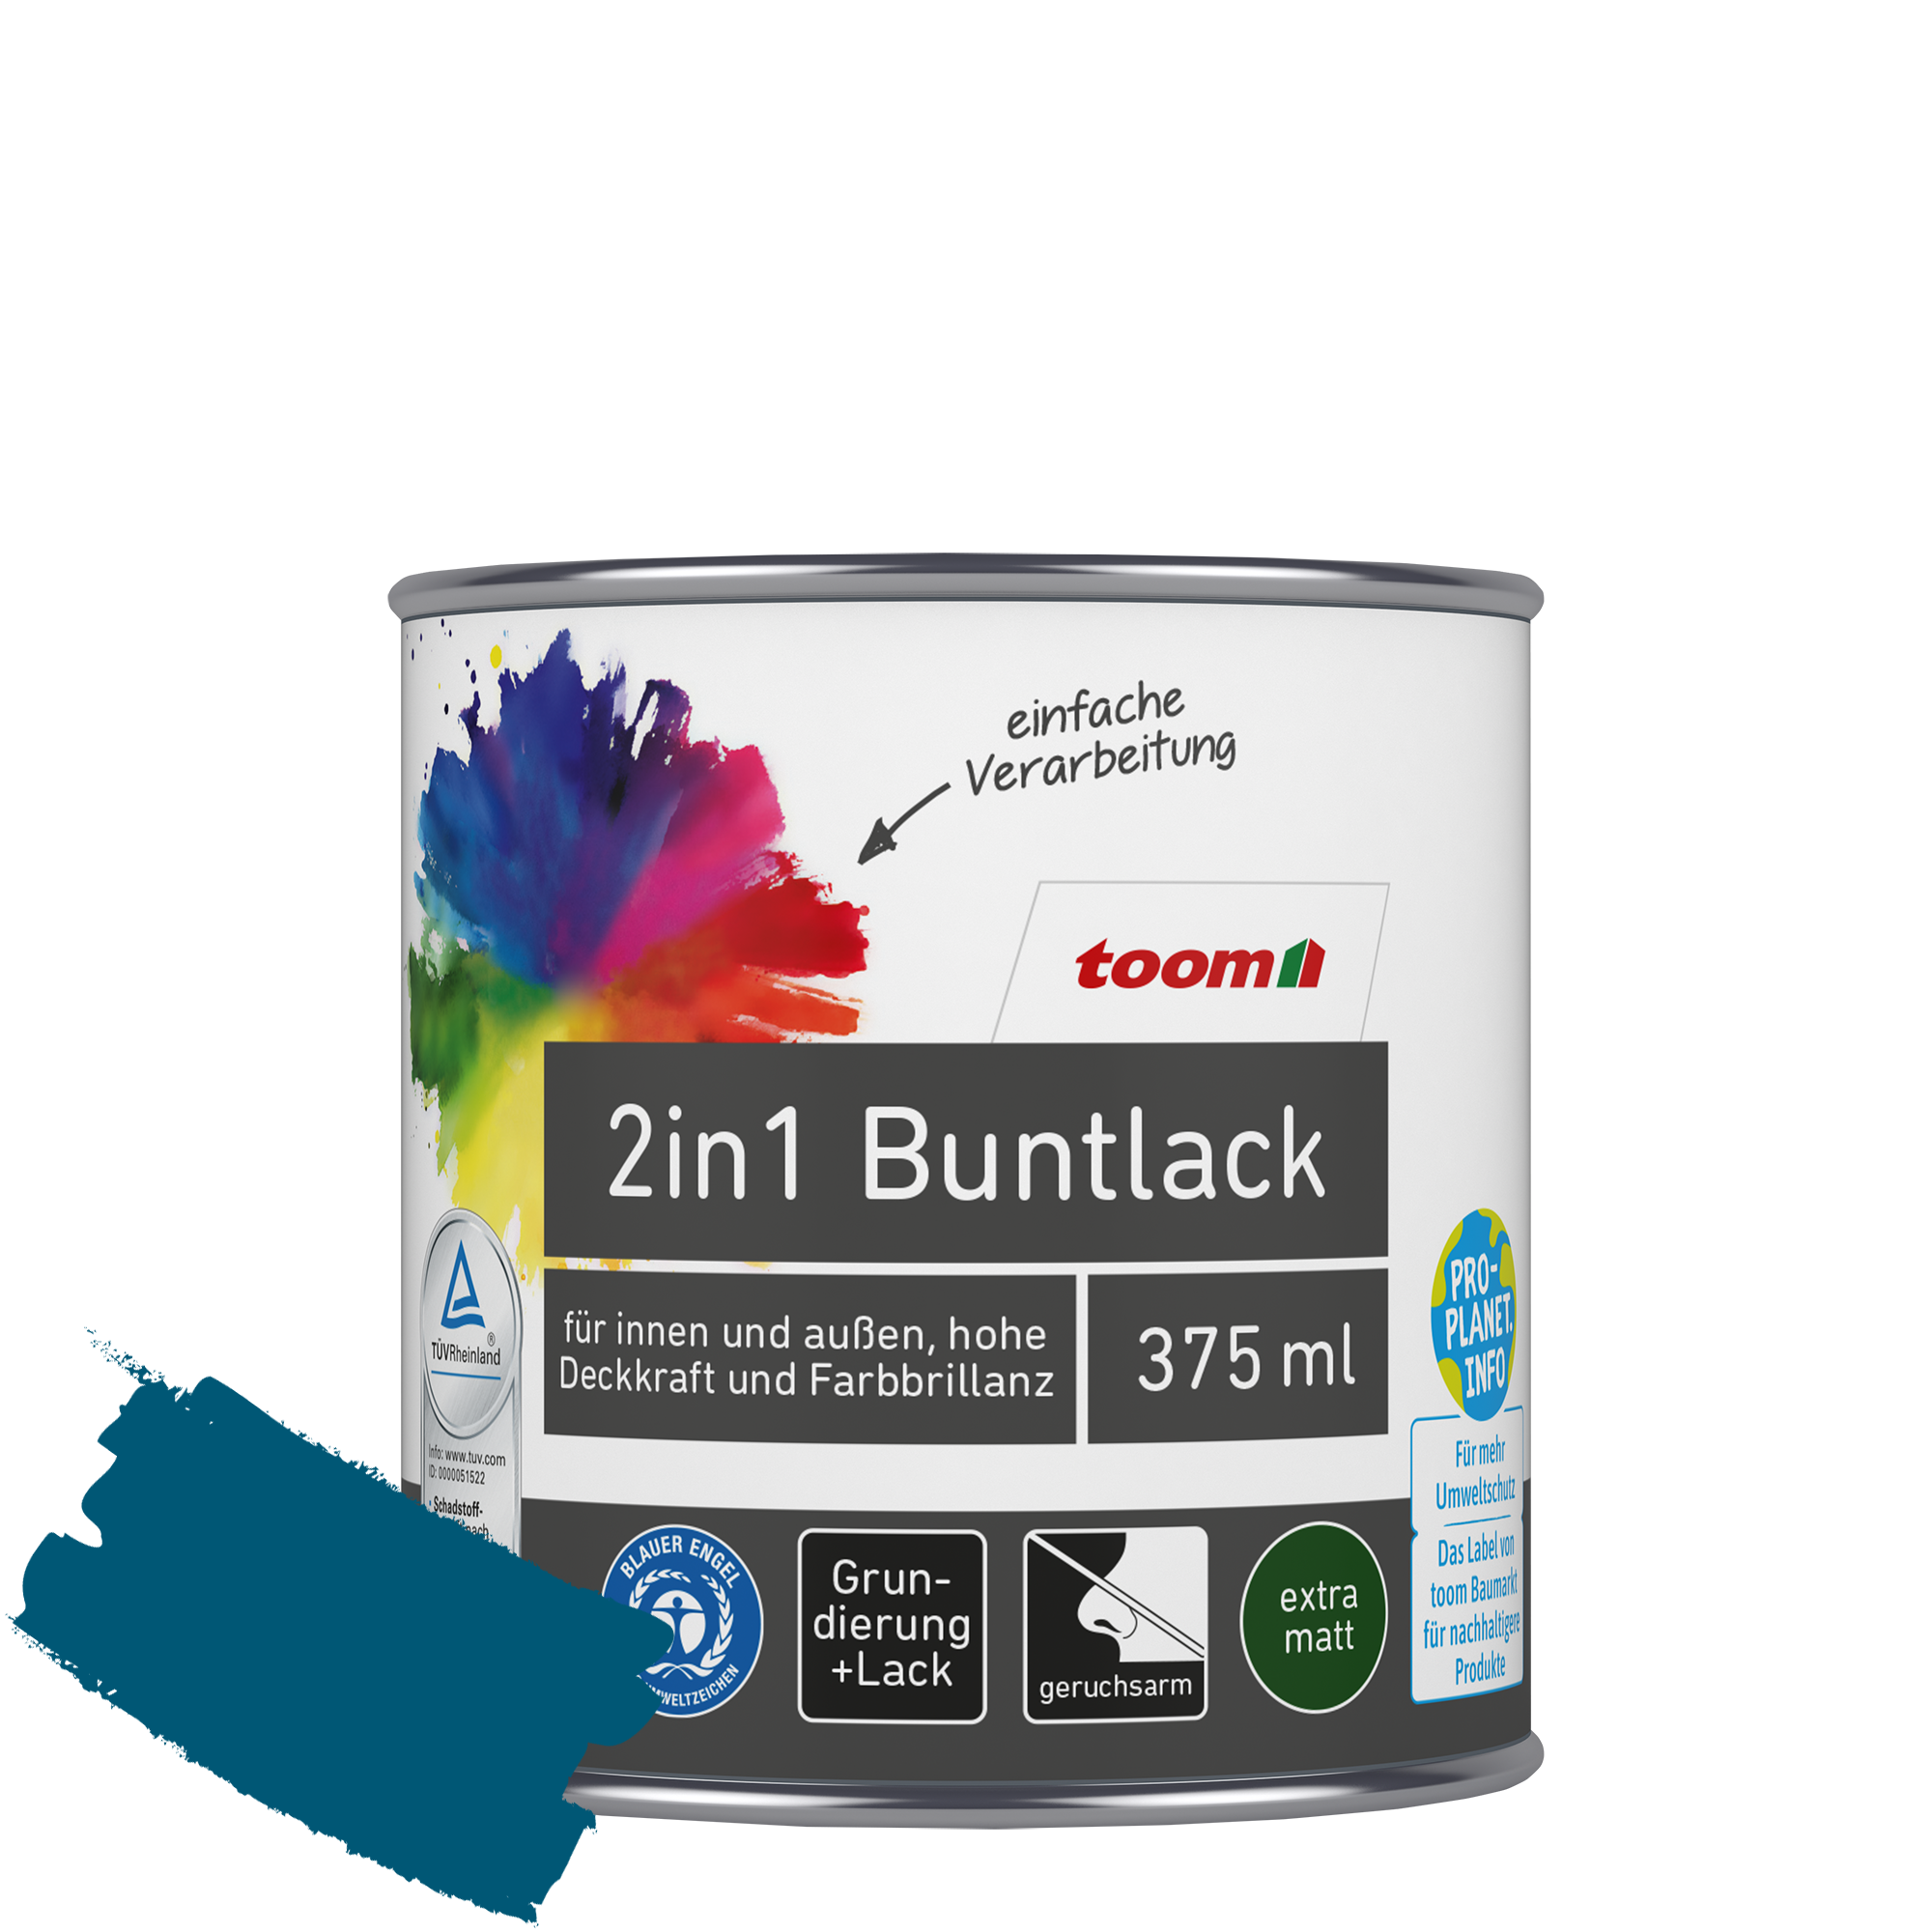 2in1 Buntlack 'Blaupause' enzianblau matt 375 ml + product picture